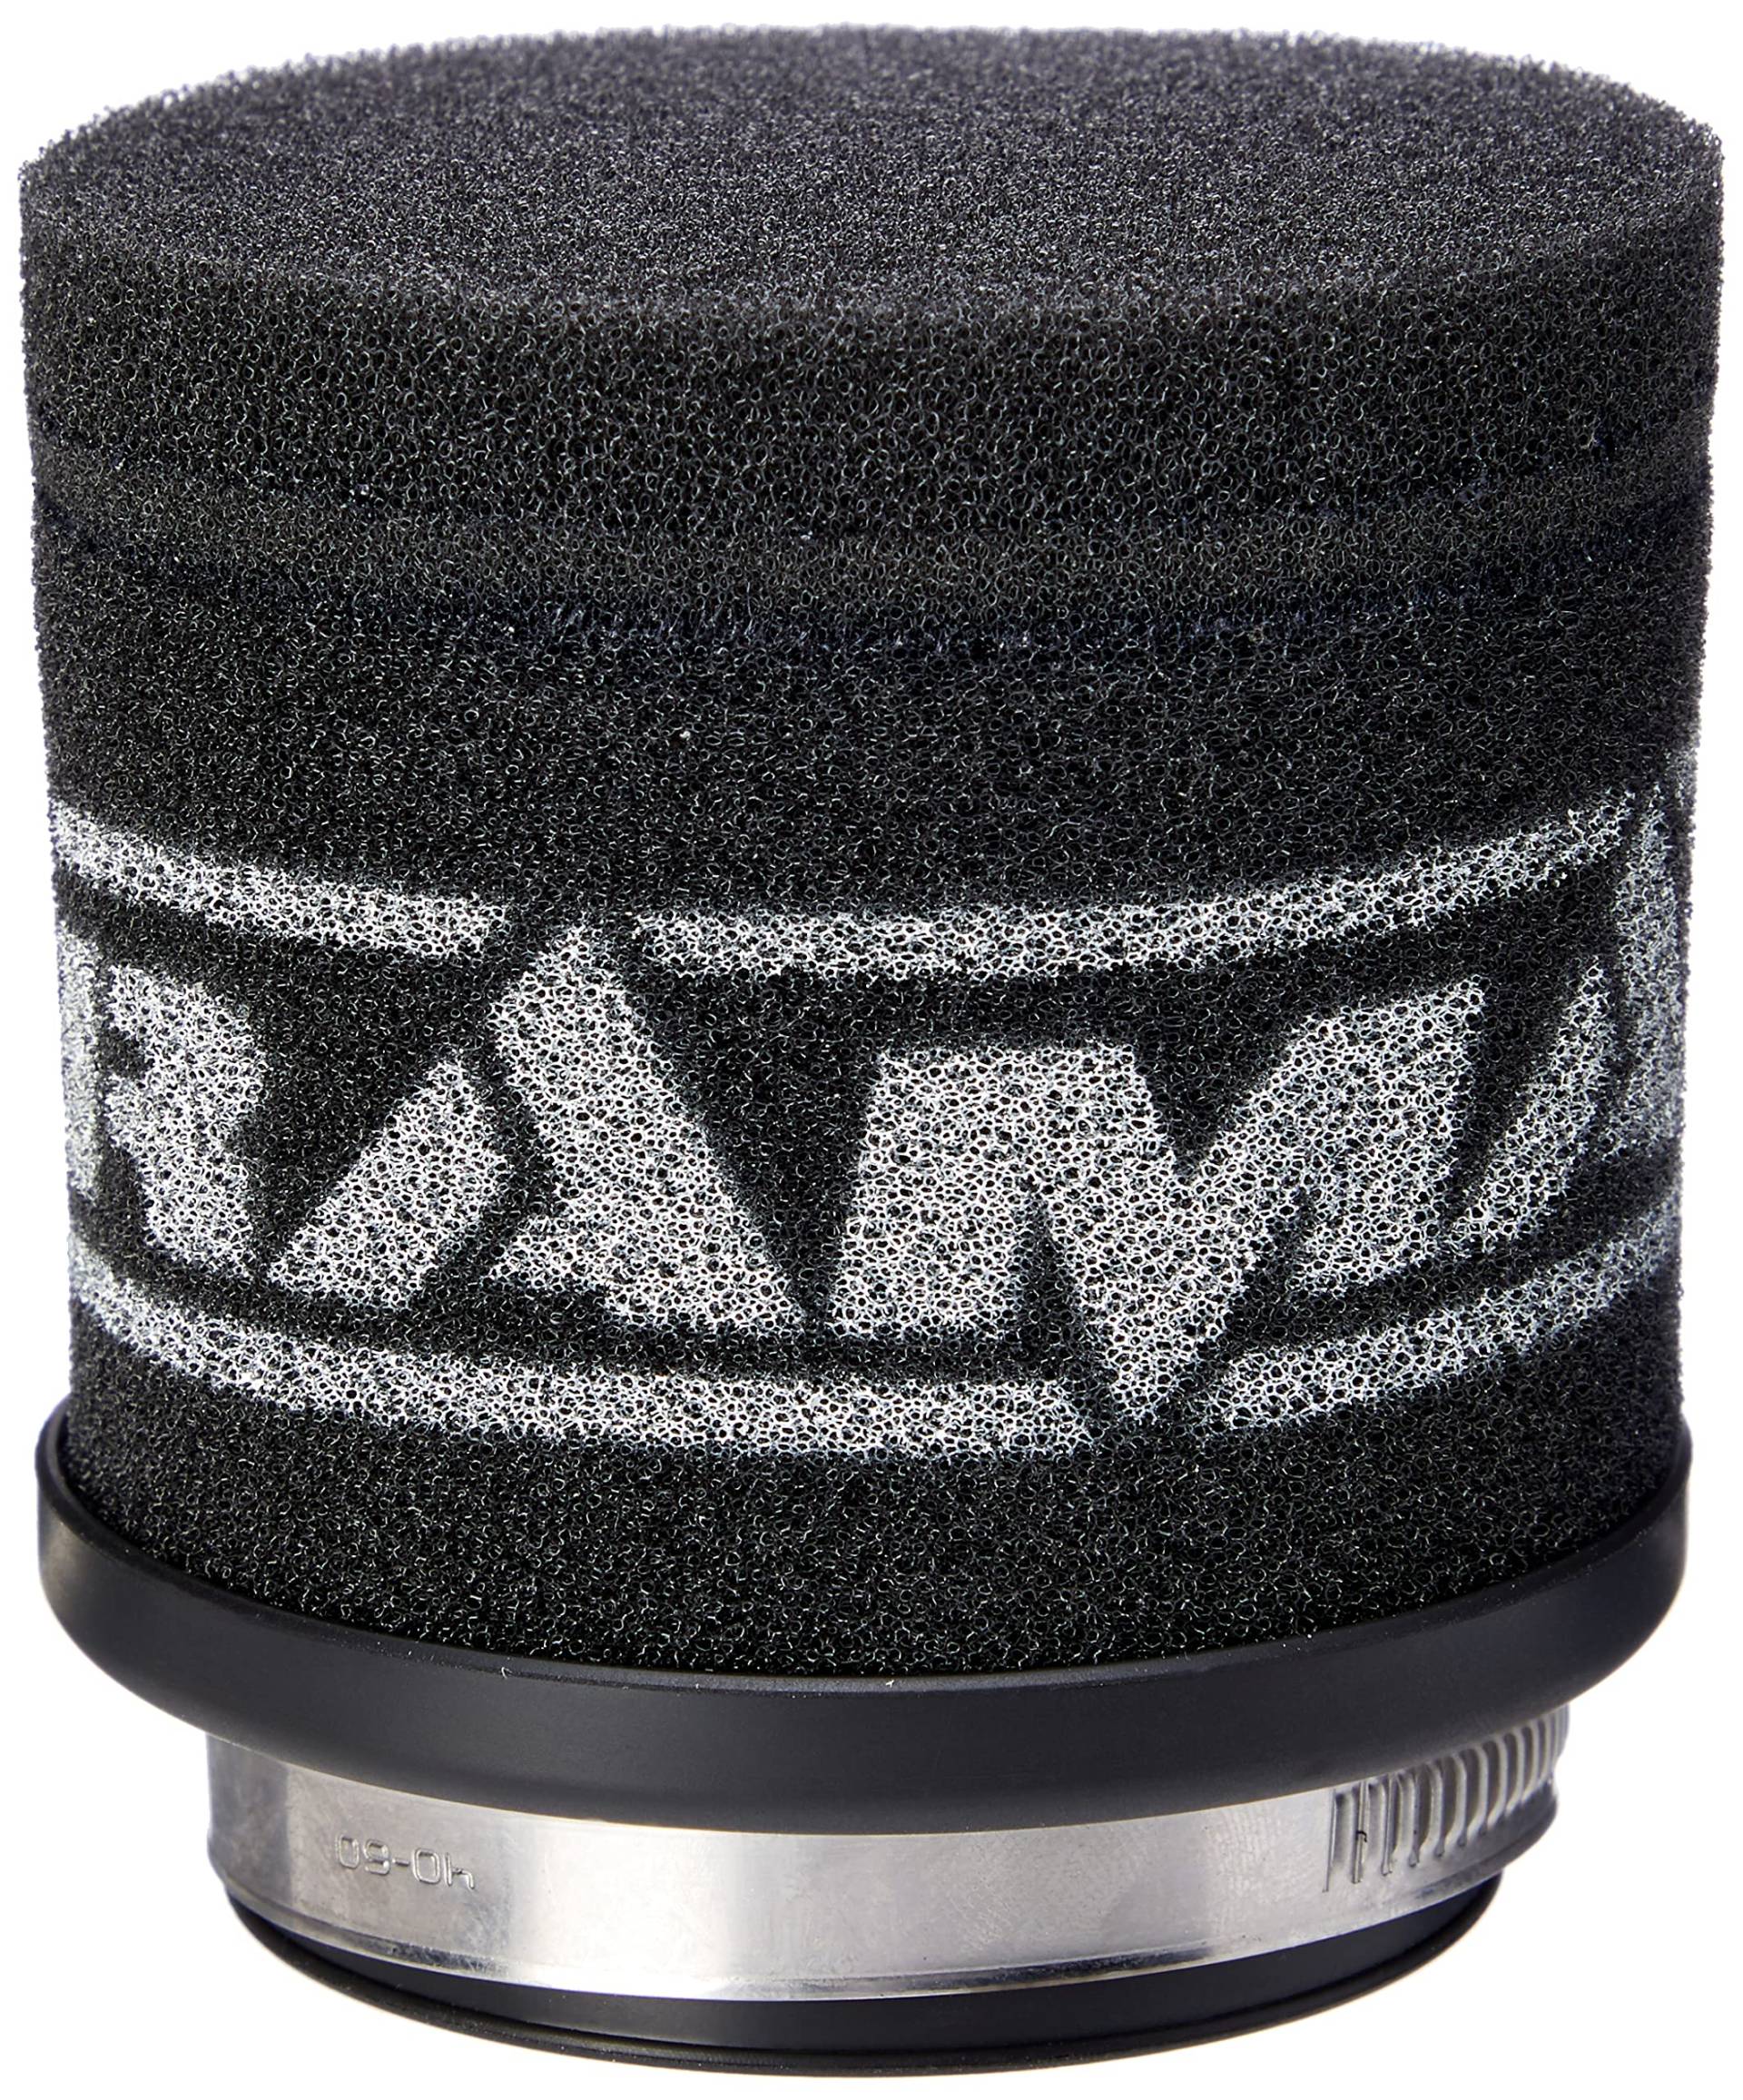 Ramair Filter MR-007 Motorrad Pod-Luftfilter, schwarz, 52 mm von Ramair Filters